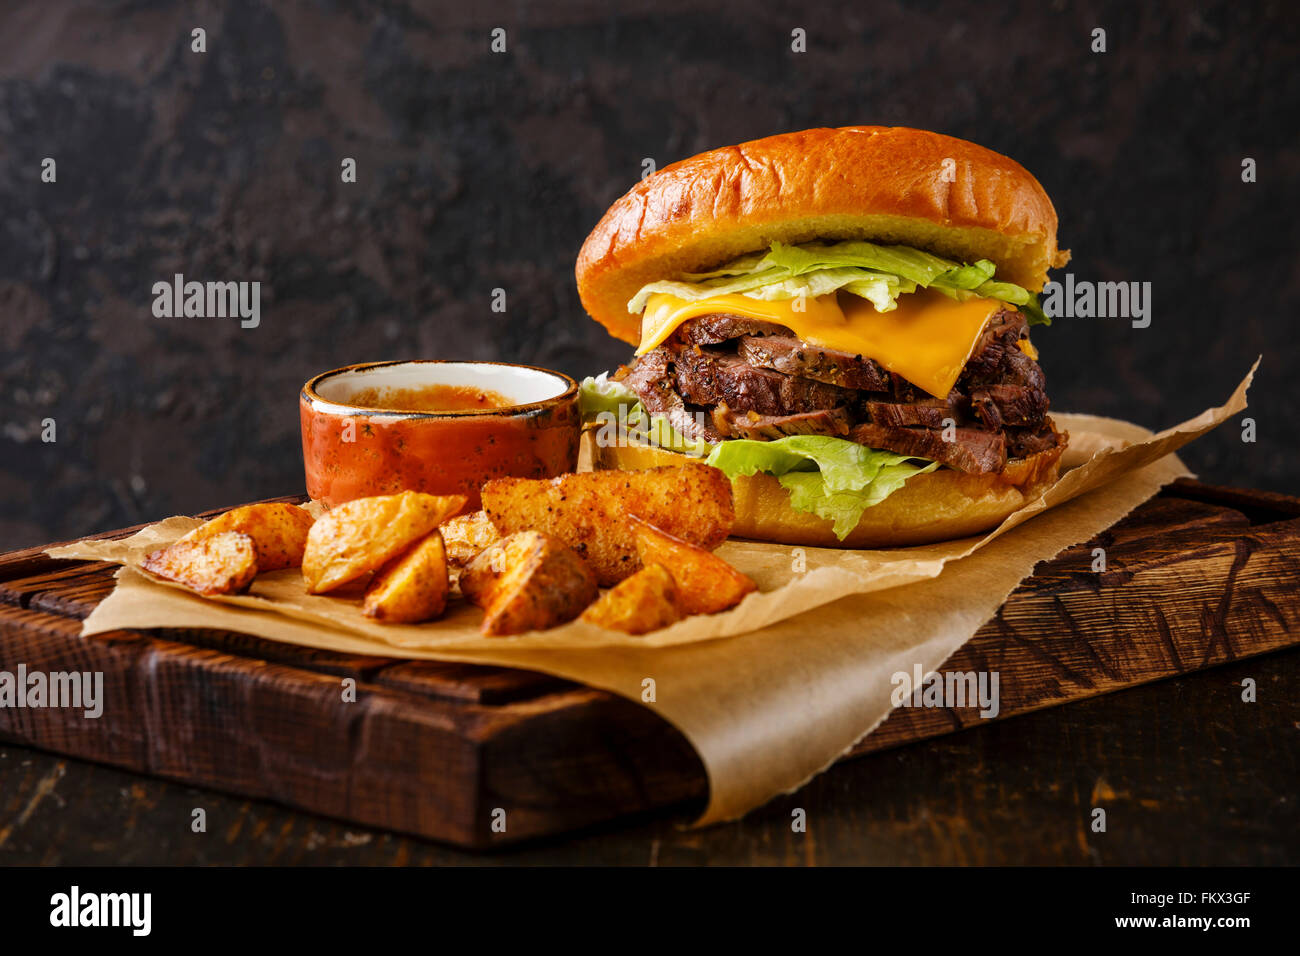 Pastrami Burger avec des tranches de rôti de bœuf et les quartiers de pommes de terre sur fond sombre Banque D'Images